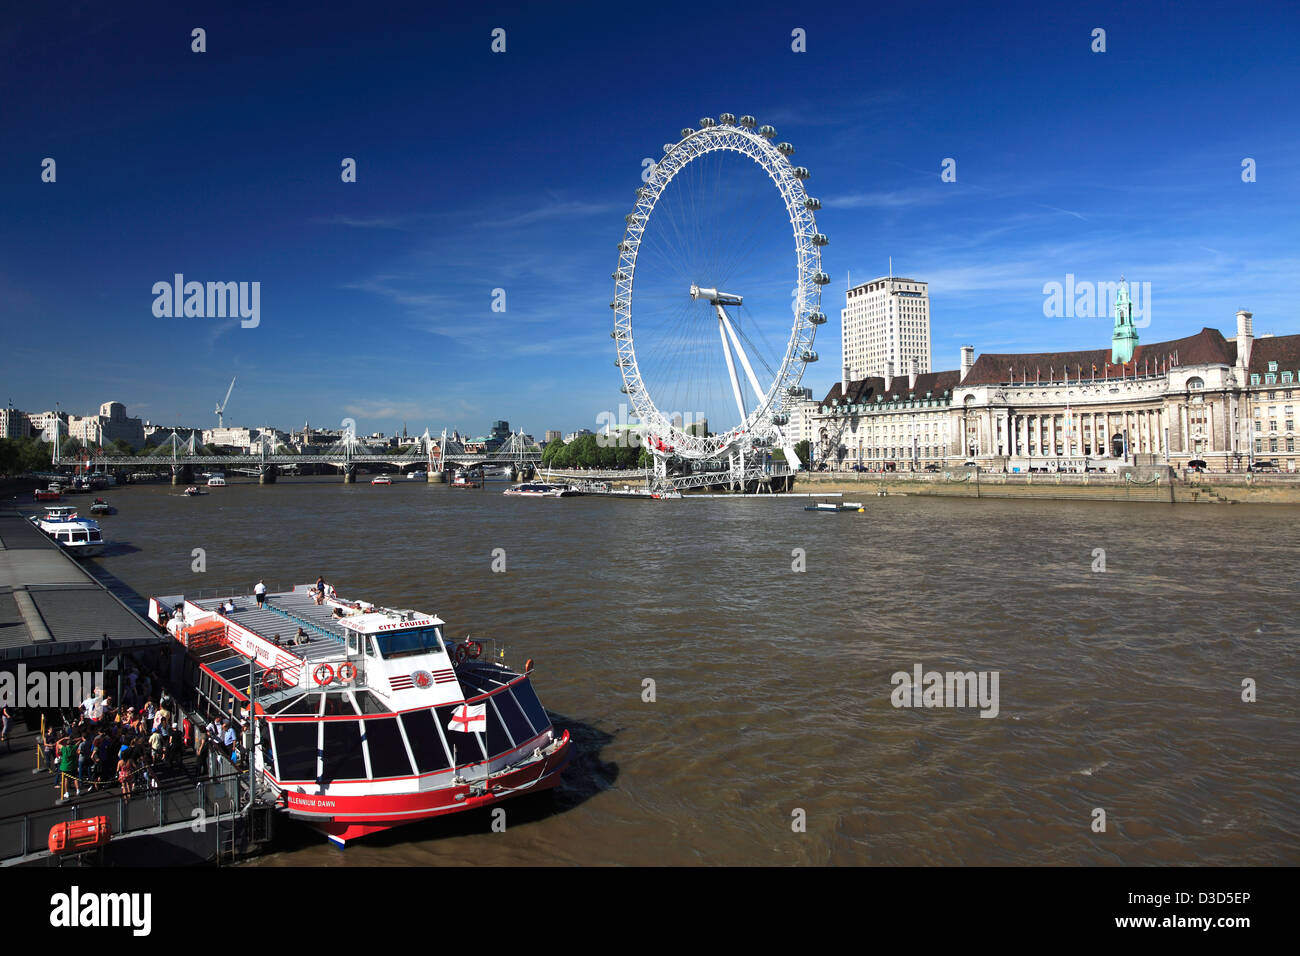 British Airways London Eye o Noria del Milenio, South Bank, el río Támesis, Lambeth, la ciudad de Londres, Inglaterra, Reino Unido. Foto de stock